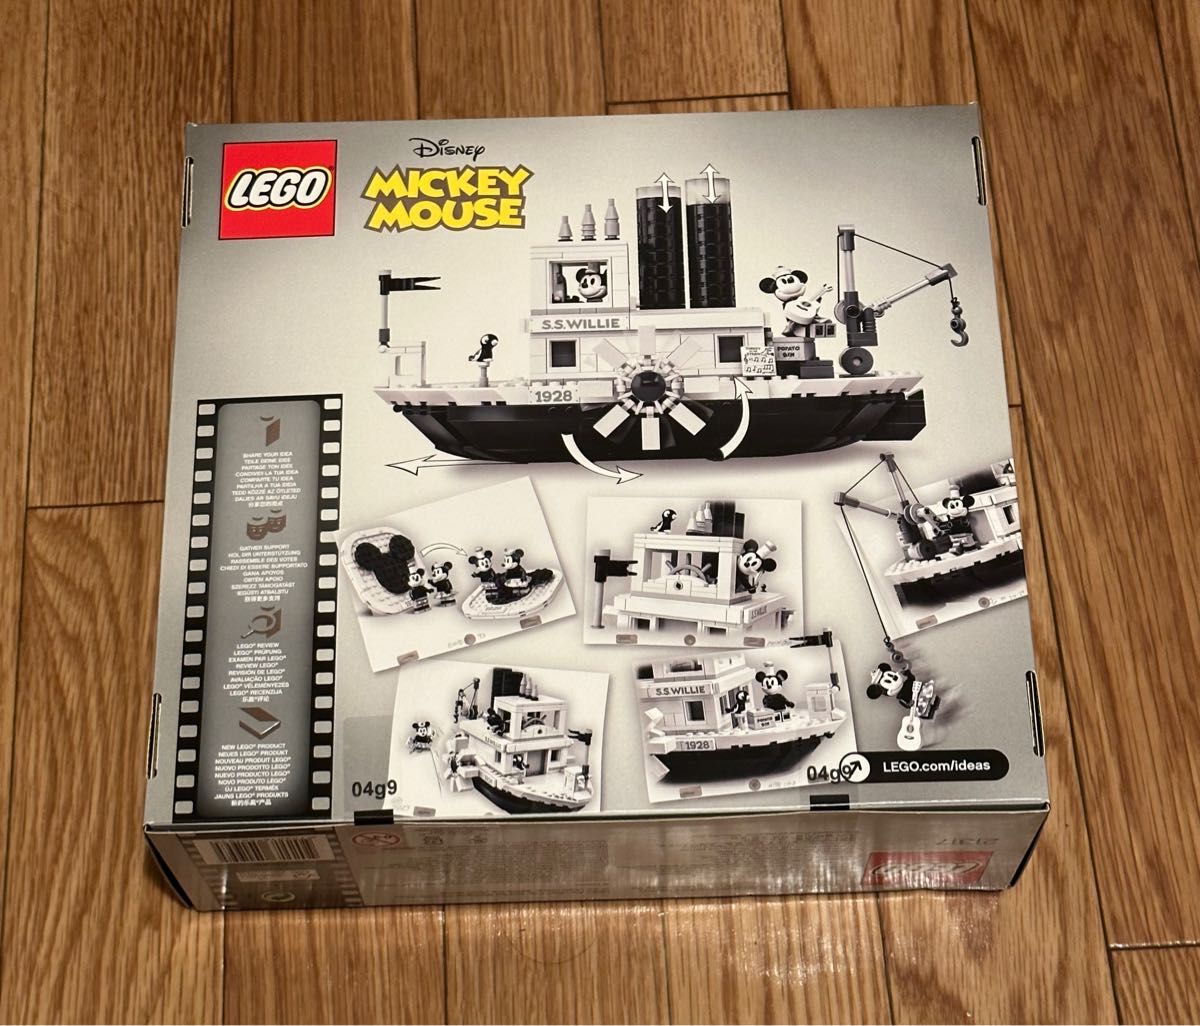 【新品未開封廃盤品】LEGO アイデア 蒸気船ウィリー ディズニー 21317